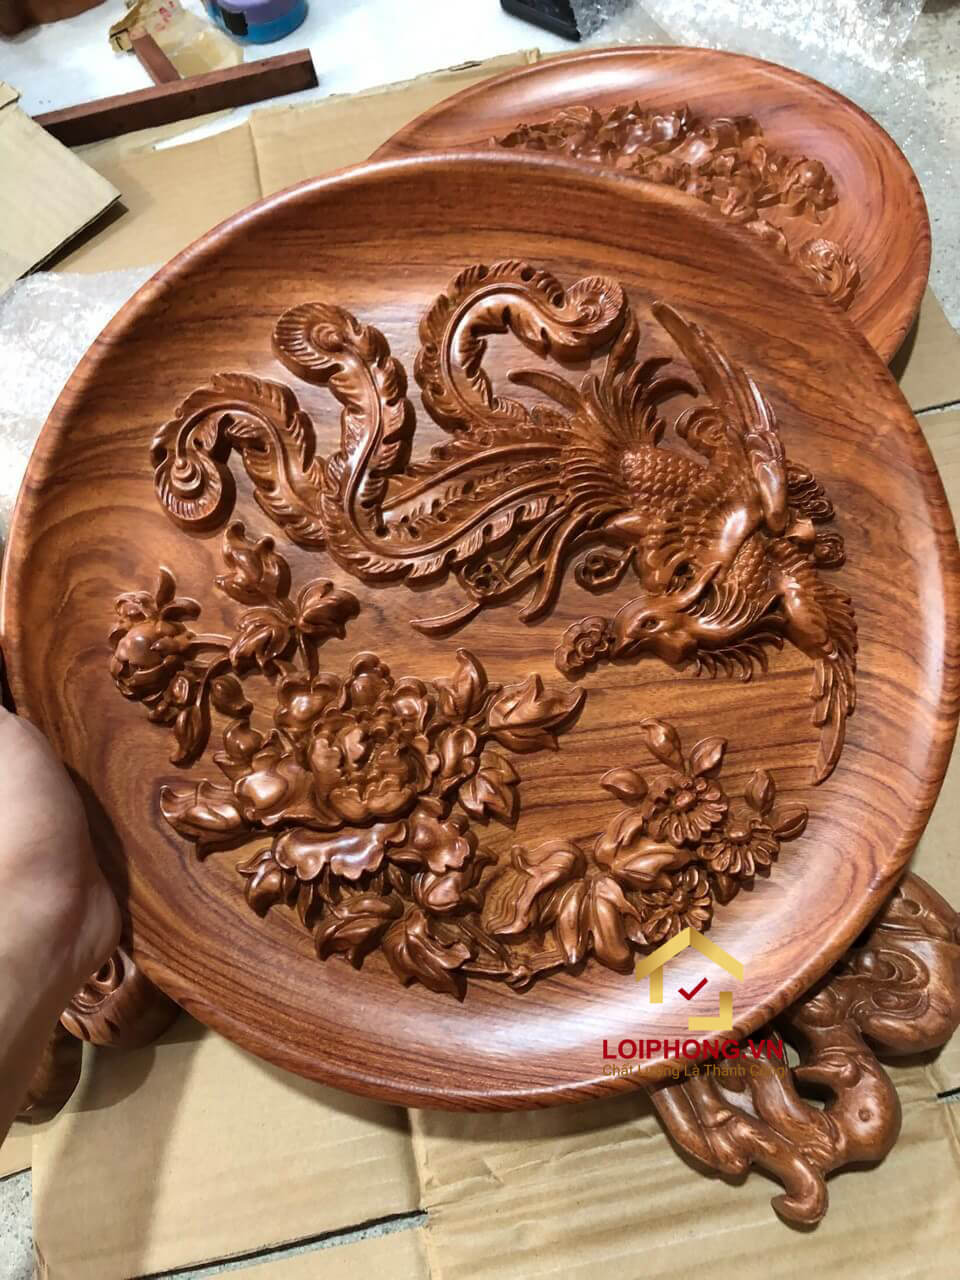 Đĩa gỗ trang trí hồng trĩ bằng gỗ hương đường kính đĩa 30 – 35 - 40 cm dày 4 cm